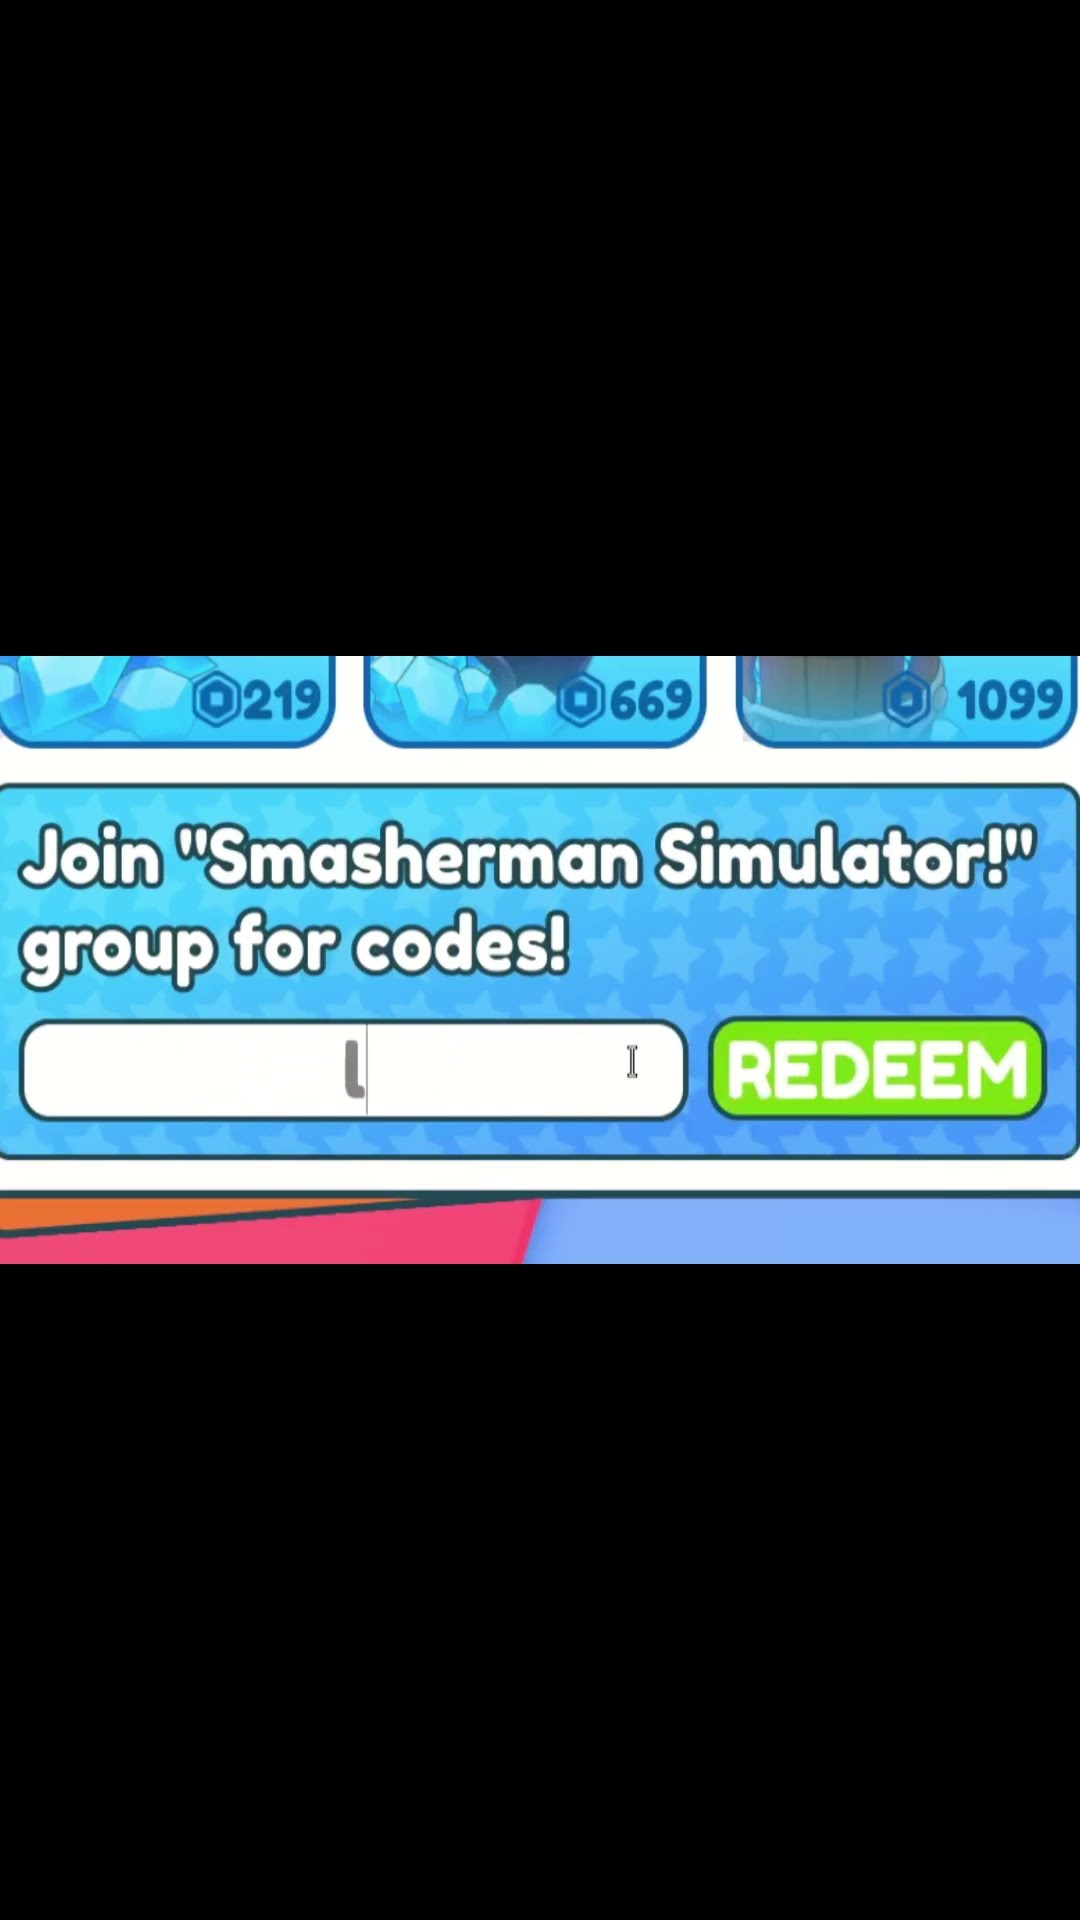 All September 2022 Smasherman Simulator Codes